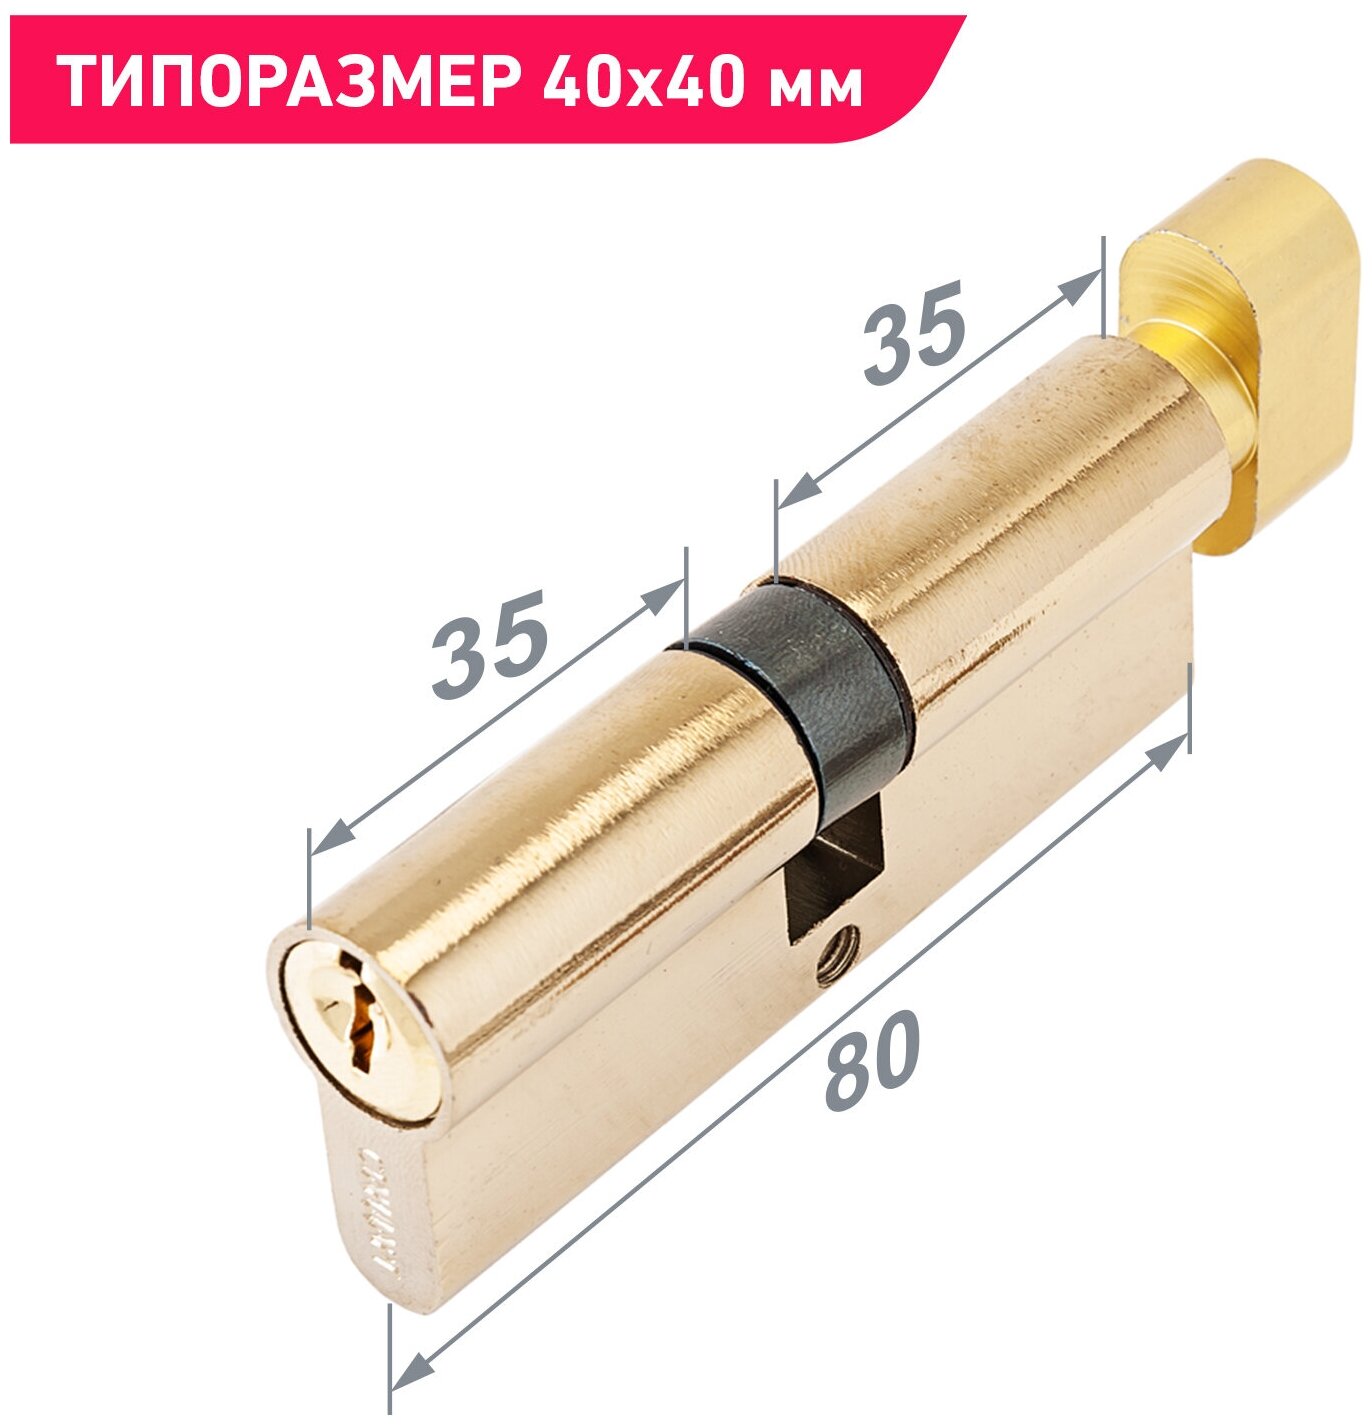 Цилиндровый механизм 35Bx10x35 (личинка замка) 80 мм для врезных замков, ключ - вертушка, цвет золото, 5 ключей, Стандарт Z. I.80В-5K BP